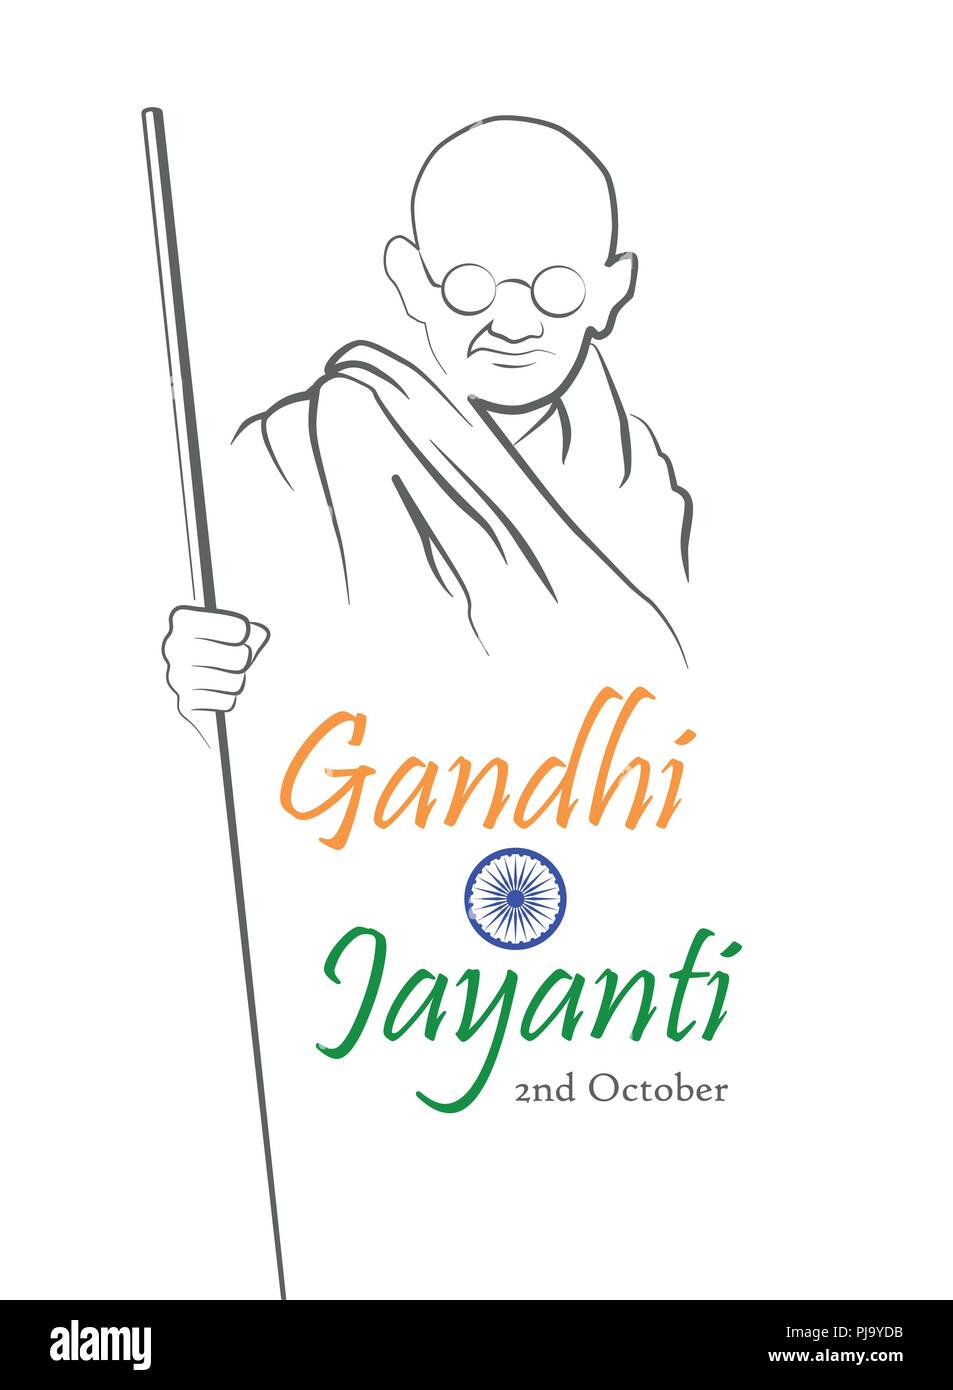 2 octobre. Gandhi Jayanti. Croquis abstraits de Mahatma Gandhi avec inscription en forme du drapeau indien. Vector illustration. Illustration de Vecteur